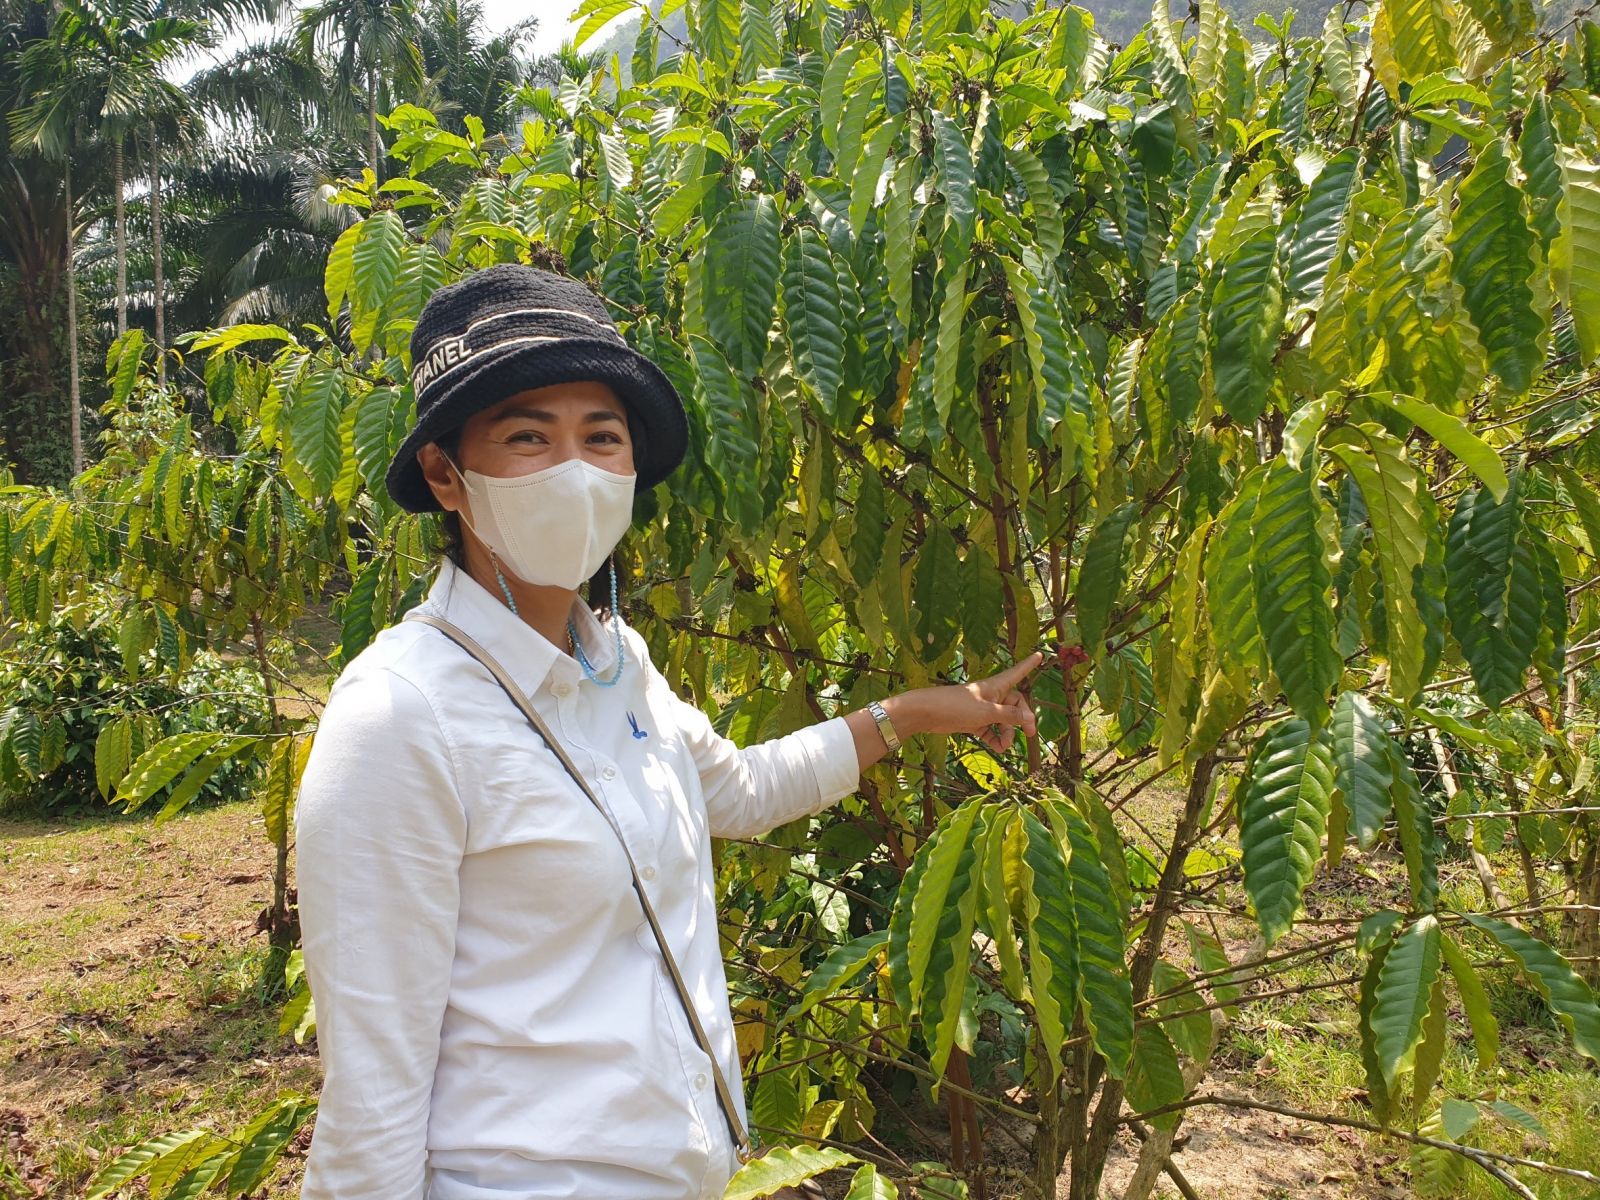 กลุ่มตรวจสอบภายใน ติดตามผลการดำเนินงานโครงการพัฒนาศักยภาพการผลิตกาแฟของกลุ่มเกษตรกรทำสวนเขาทะลุ จังหวัดชุมพร